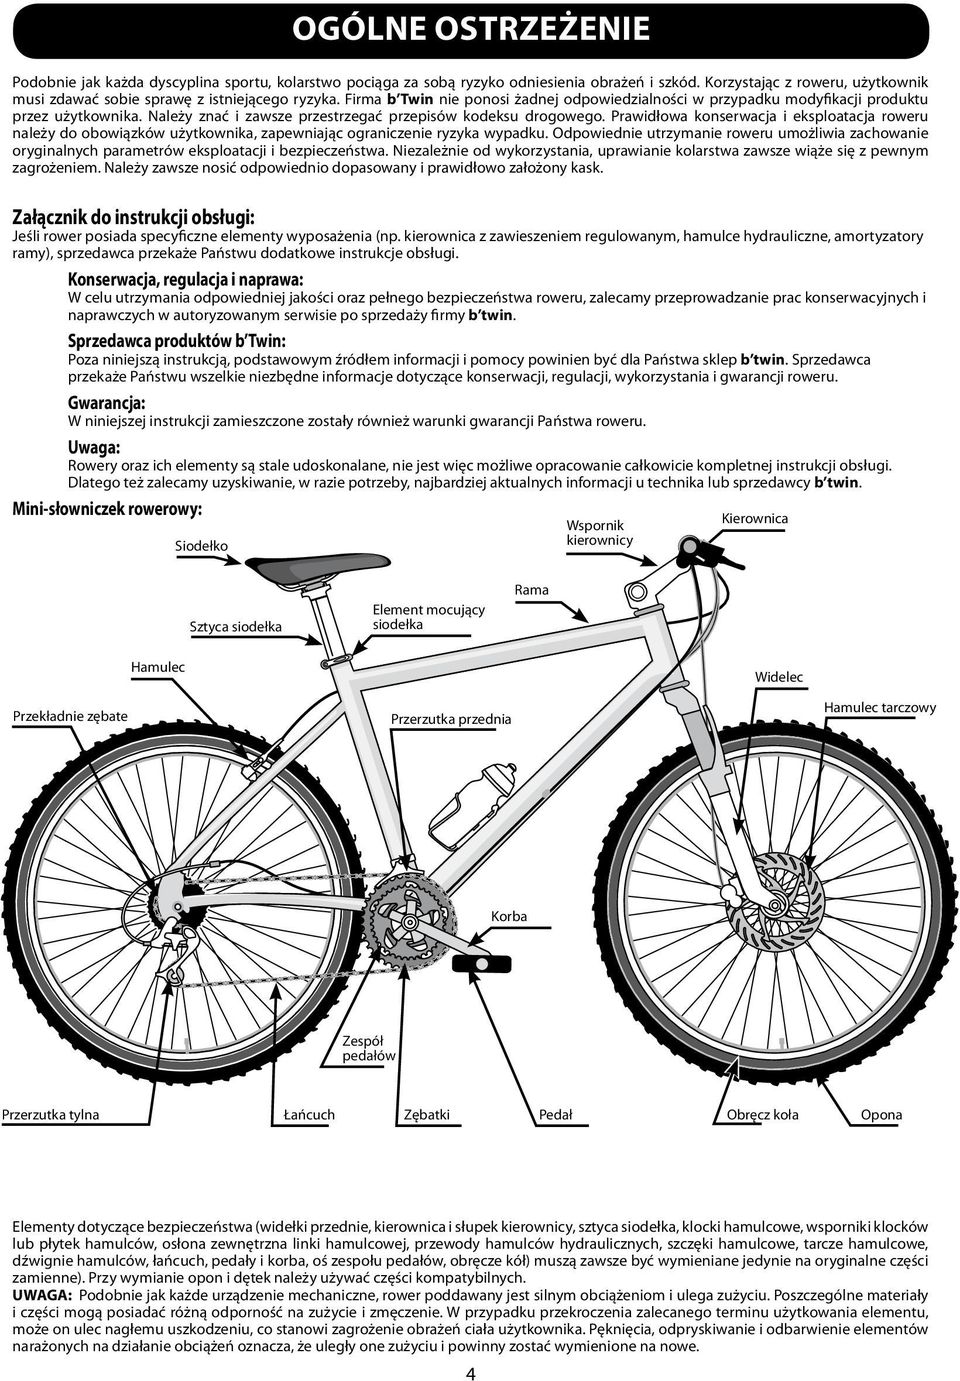 Prawidłowa konserwacja i eksploatacja roweru należy do obowiązków użytkownika, zapewniając ograniczenie ryzyka wypadku.